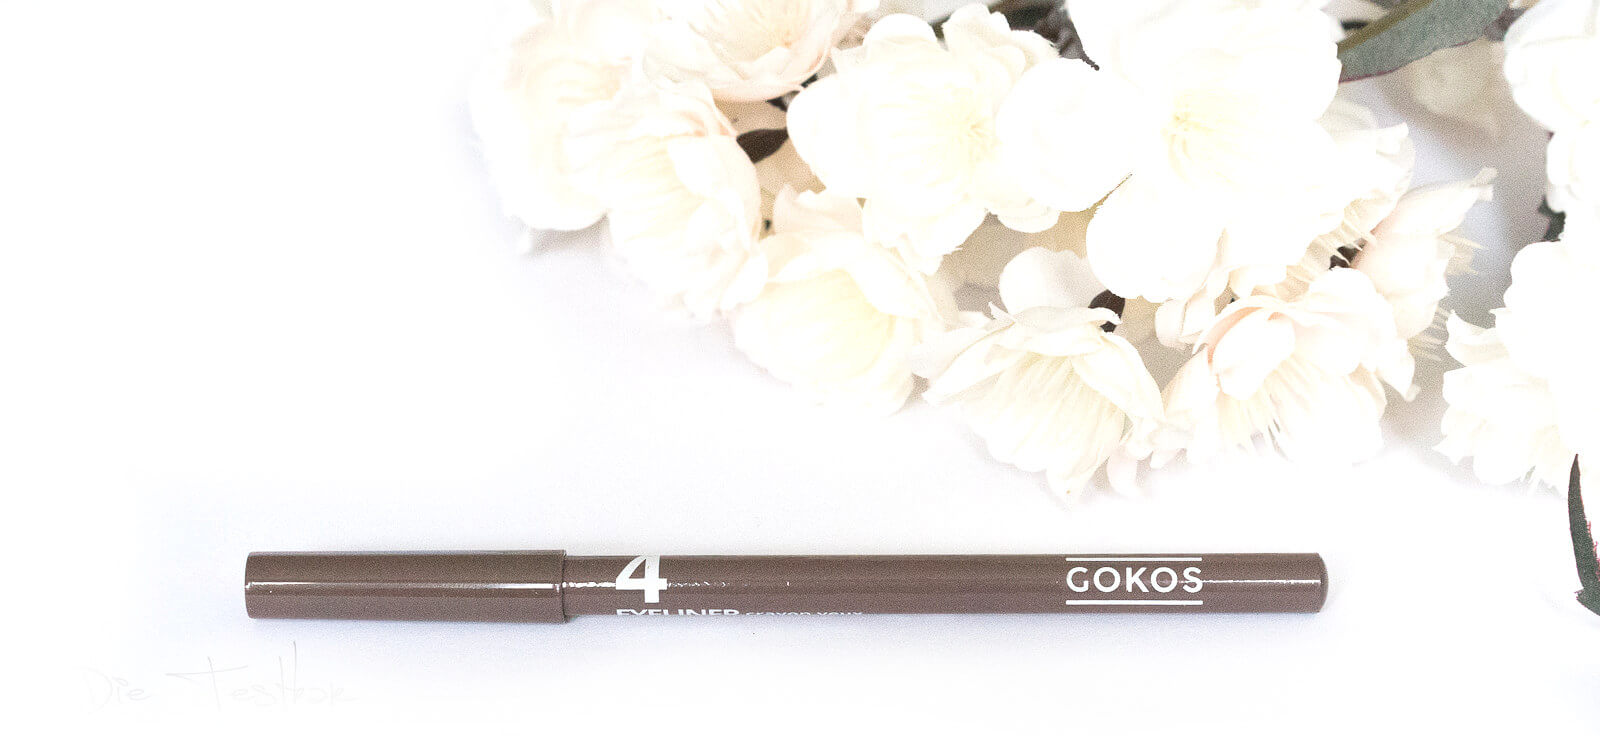 GOKOS - Beauty to go - Indie-Makeup-Brand mit Stiften 140